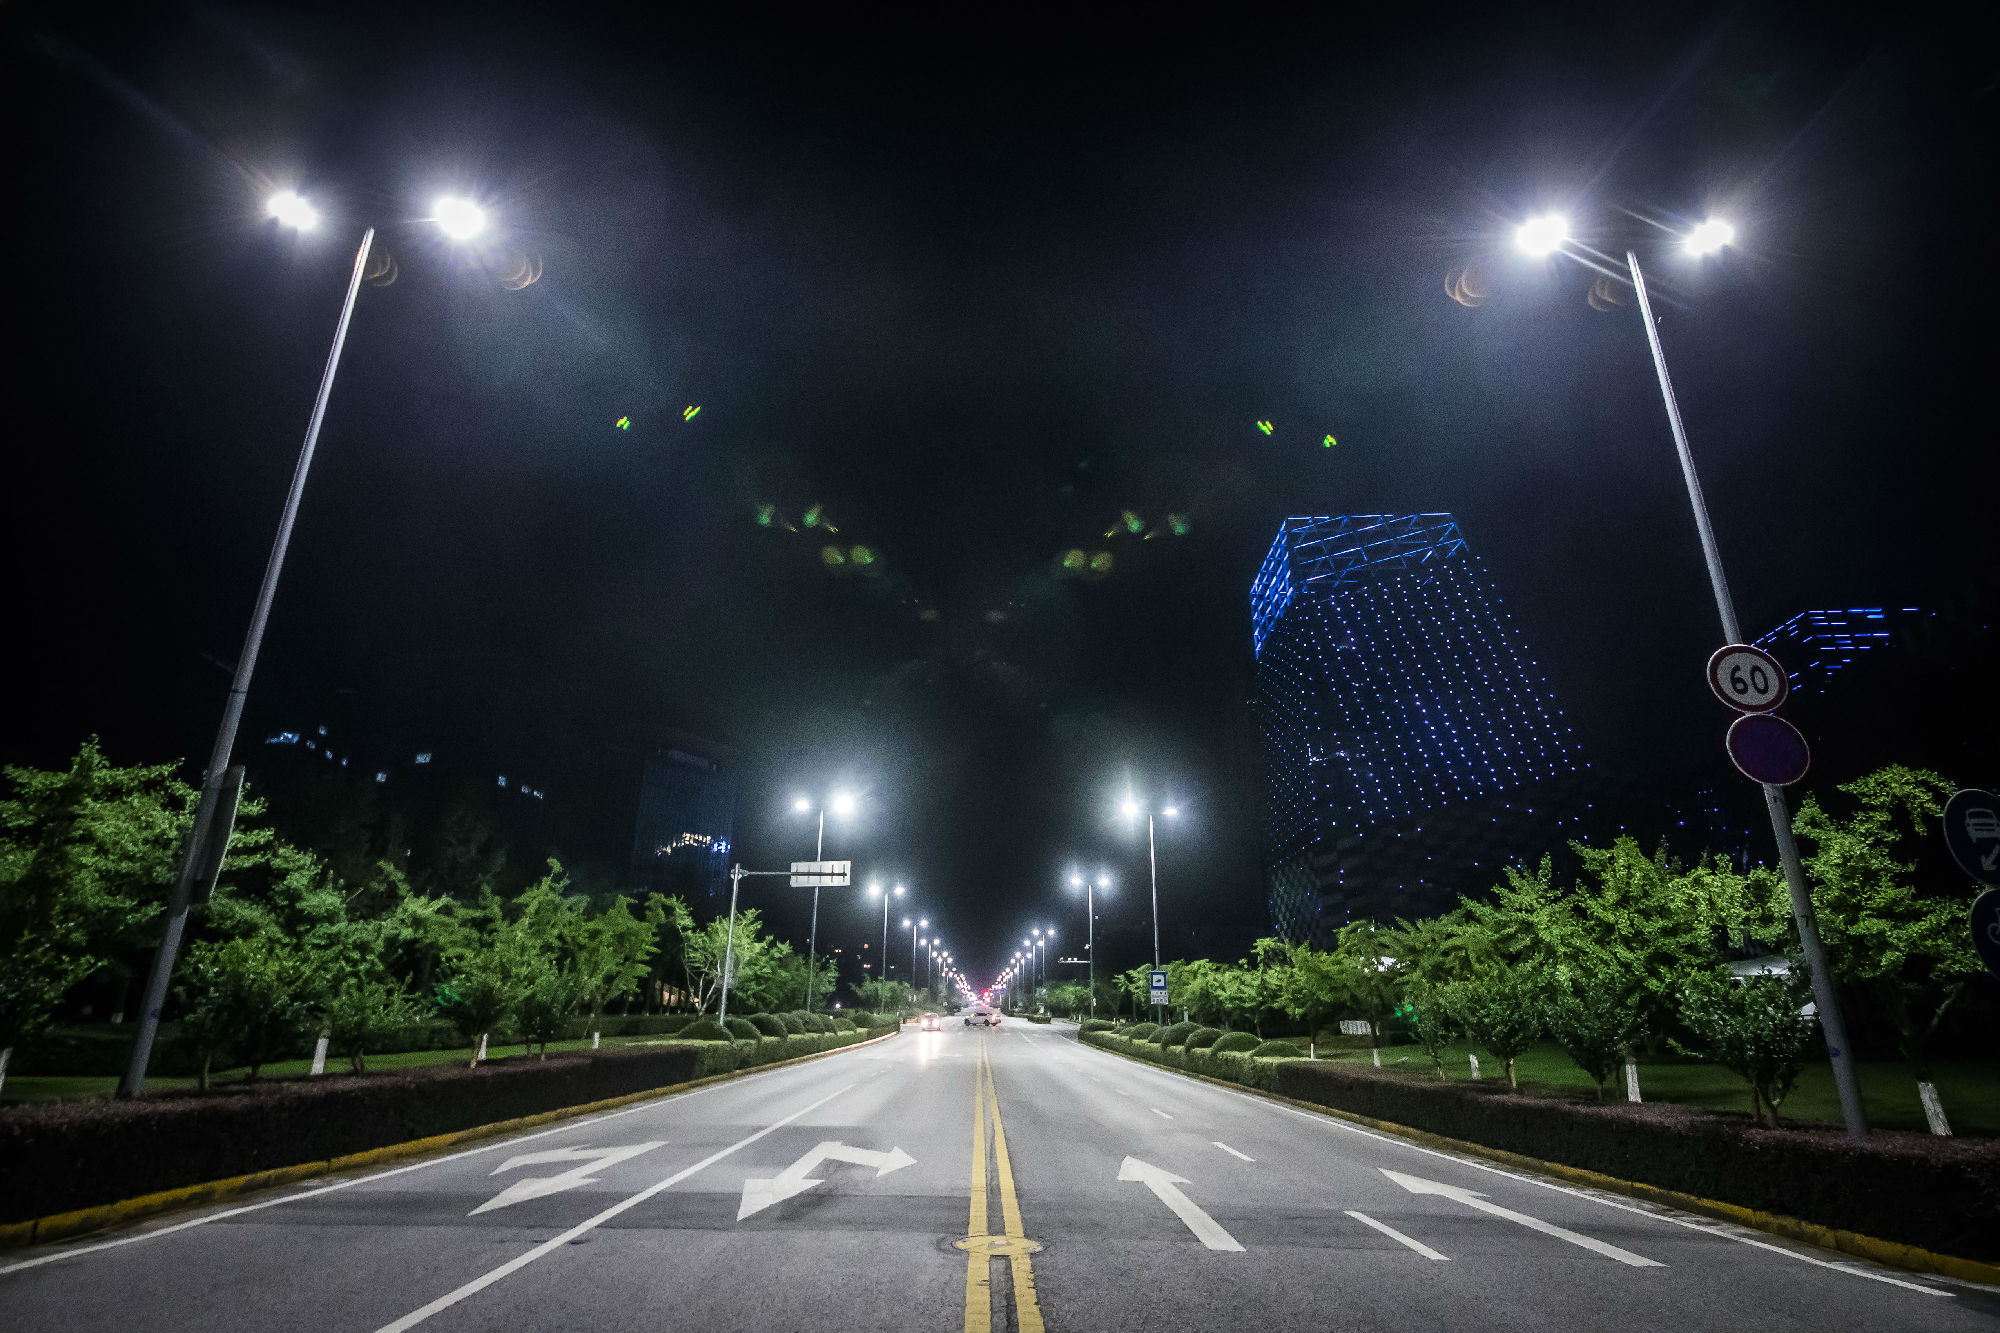 石墨烯复合材料散热涂层技术在大功率LED灯具上的应用——2019神灯奖申报技术